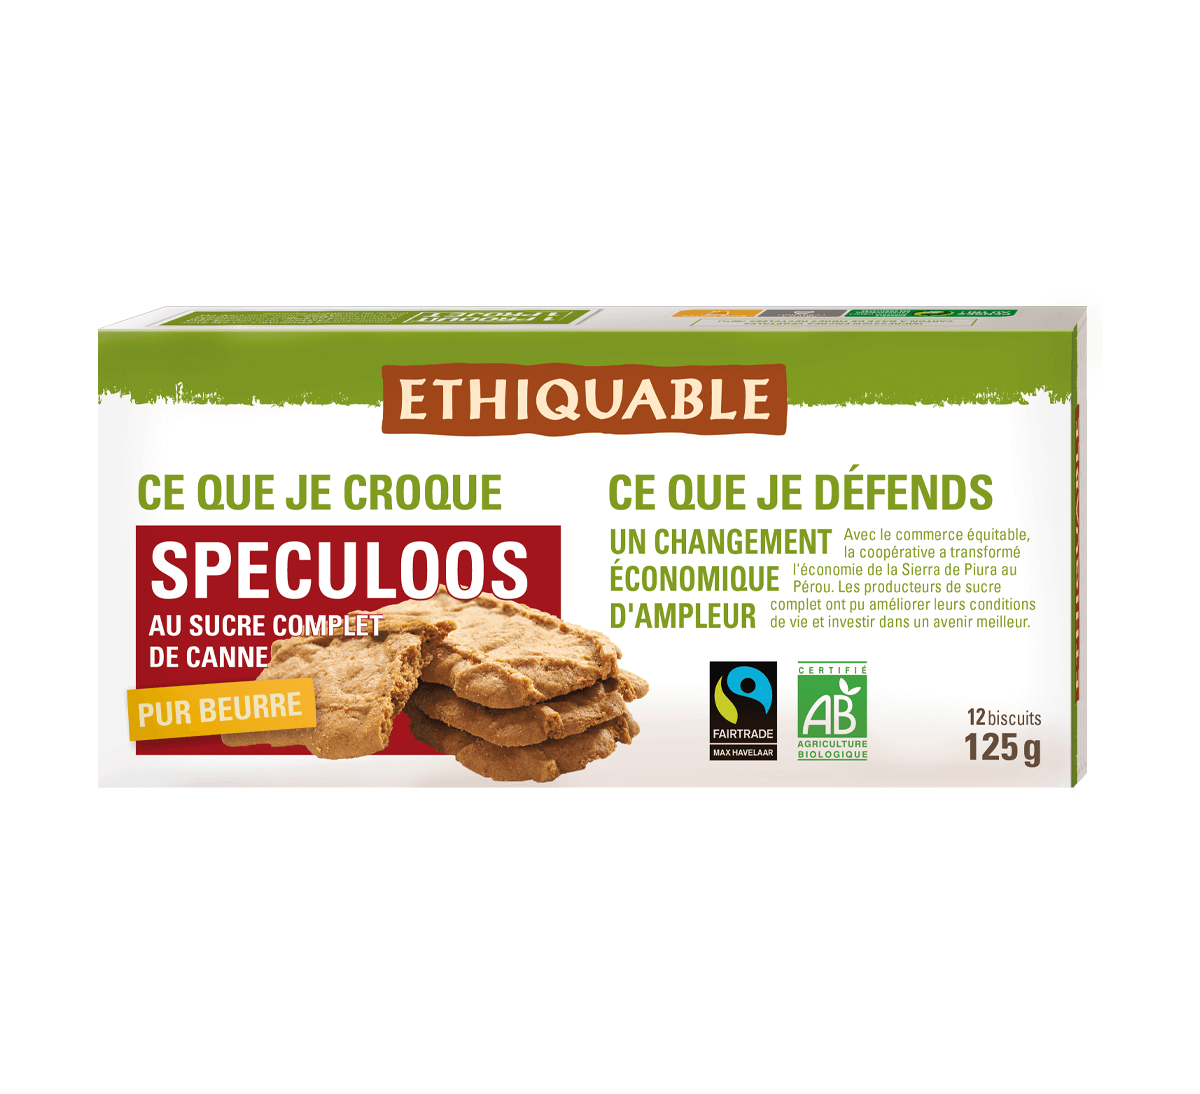 Ethiquable - Biscuits spéculoos bio pur beurre au sucre de canne issus du commerce équitable